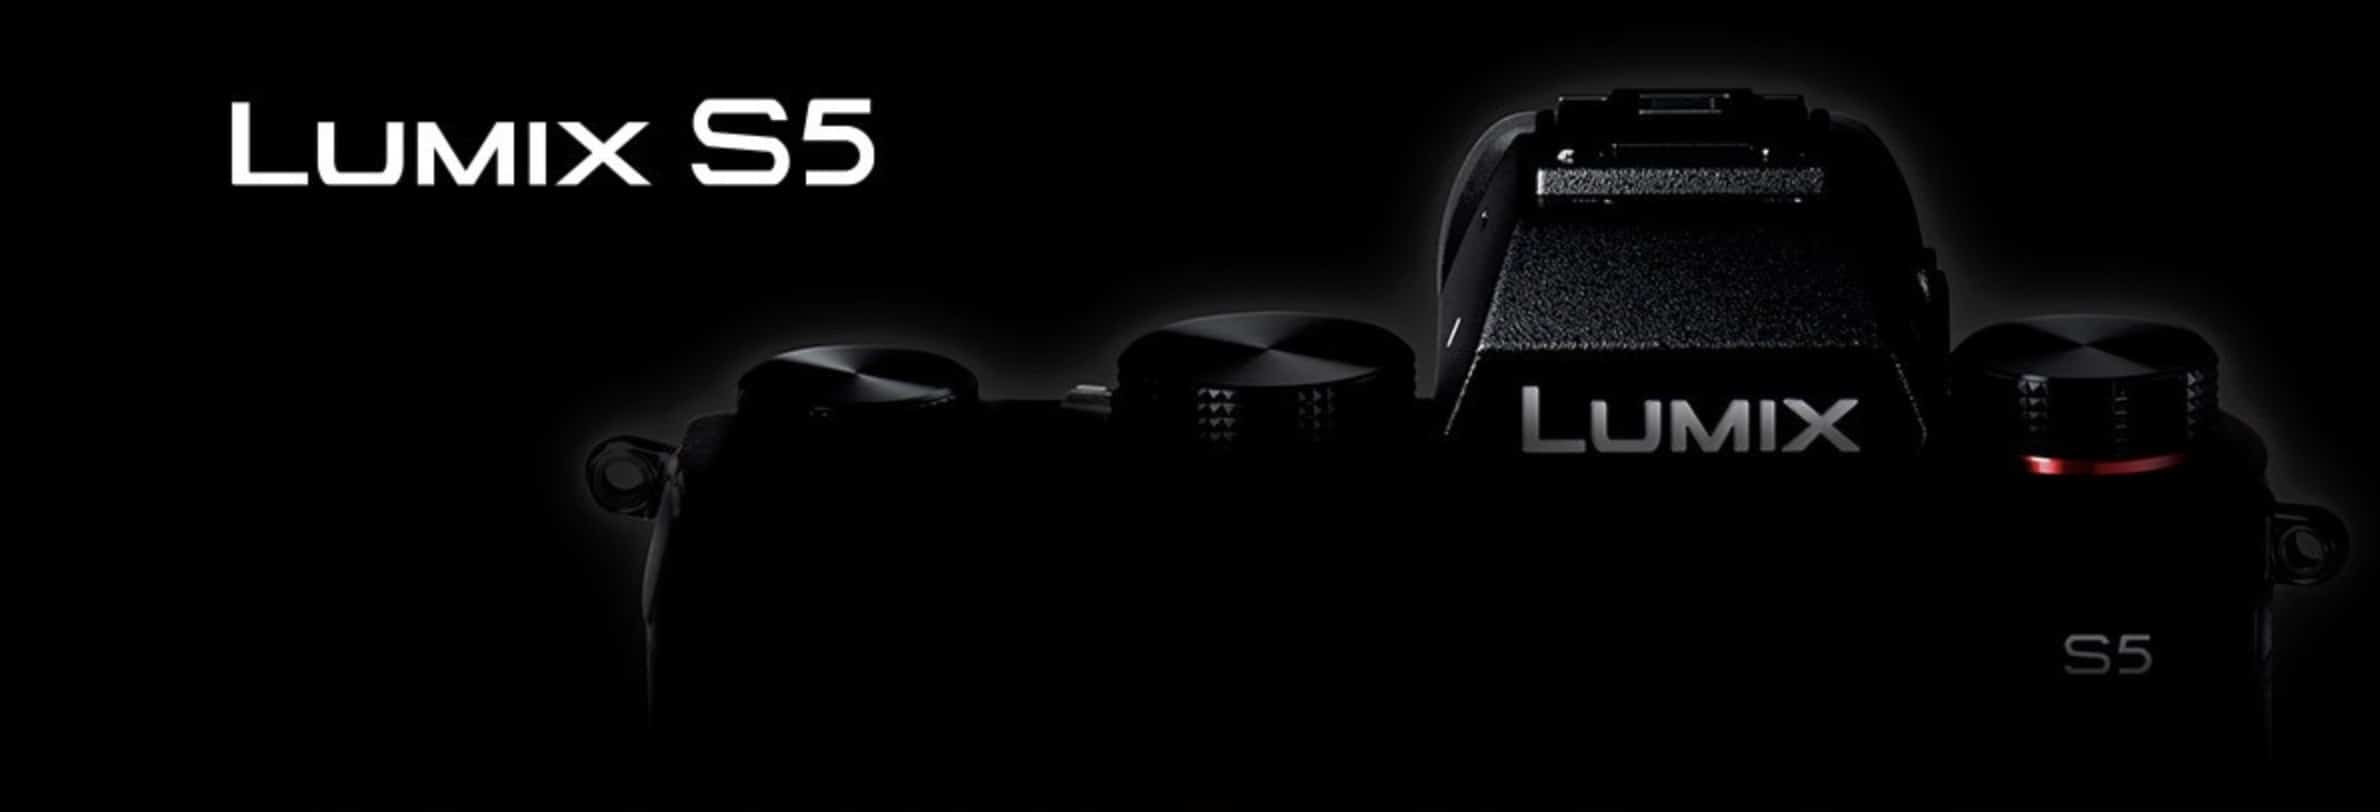 Panasonic sẽ giới thiệu máy ảnh Lumix S5 vào ngày 2/9